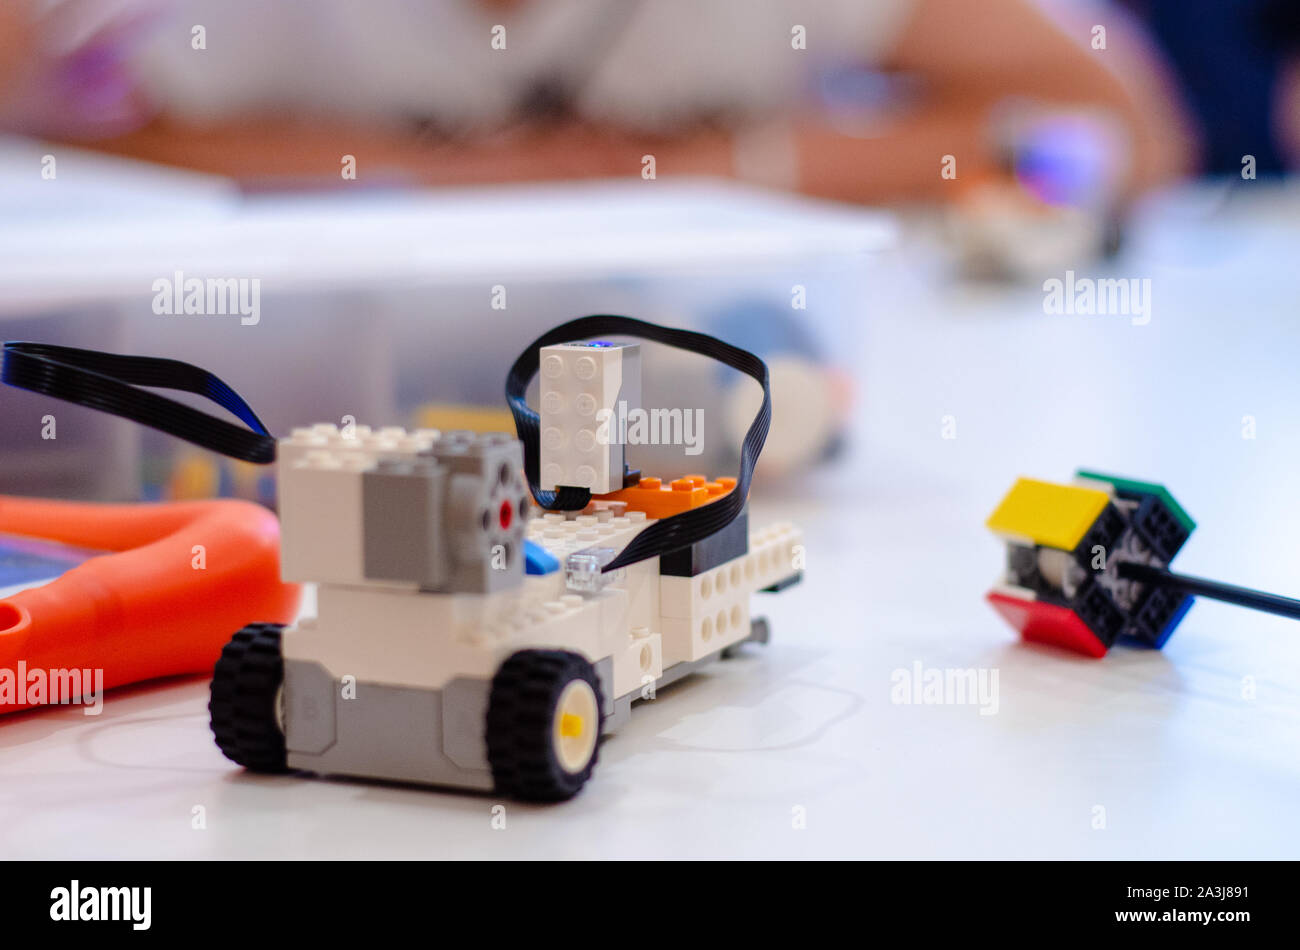 Lego robotics Stock Photo